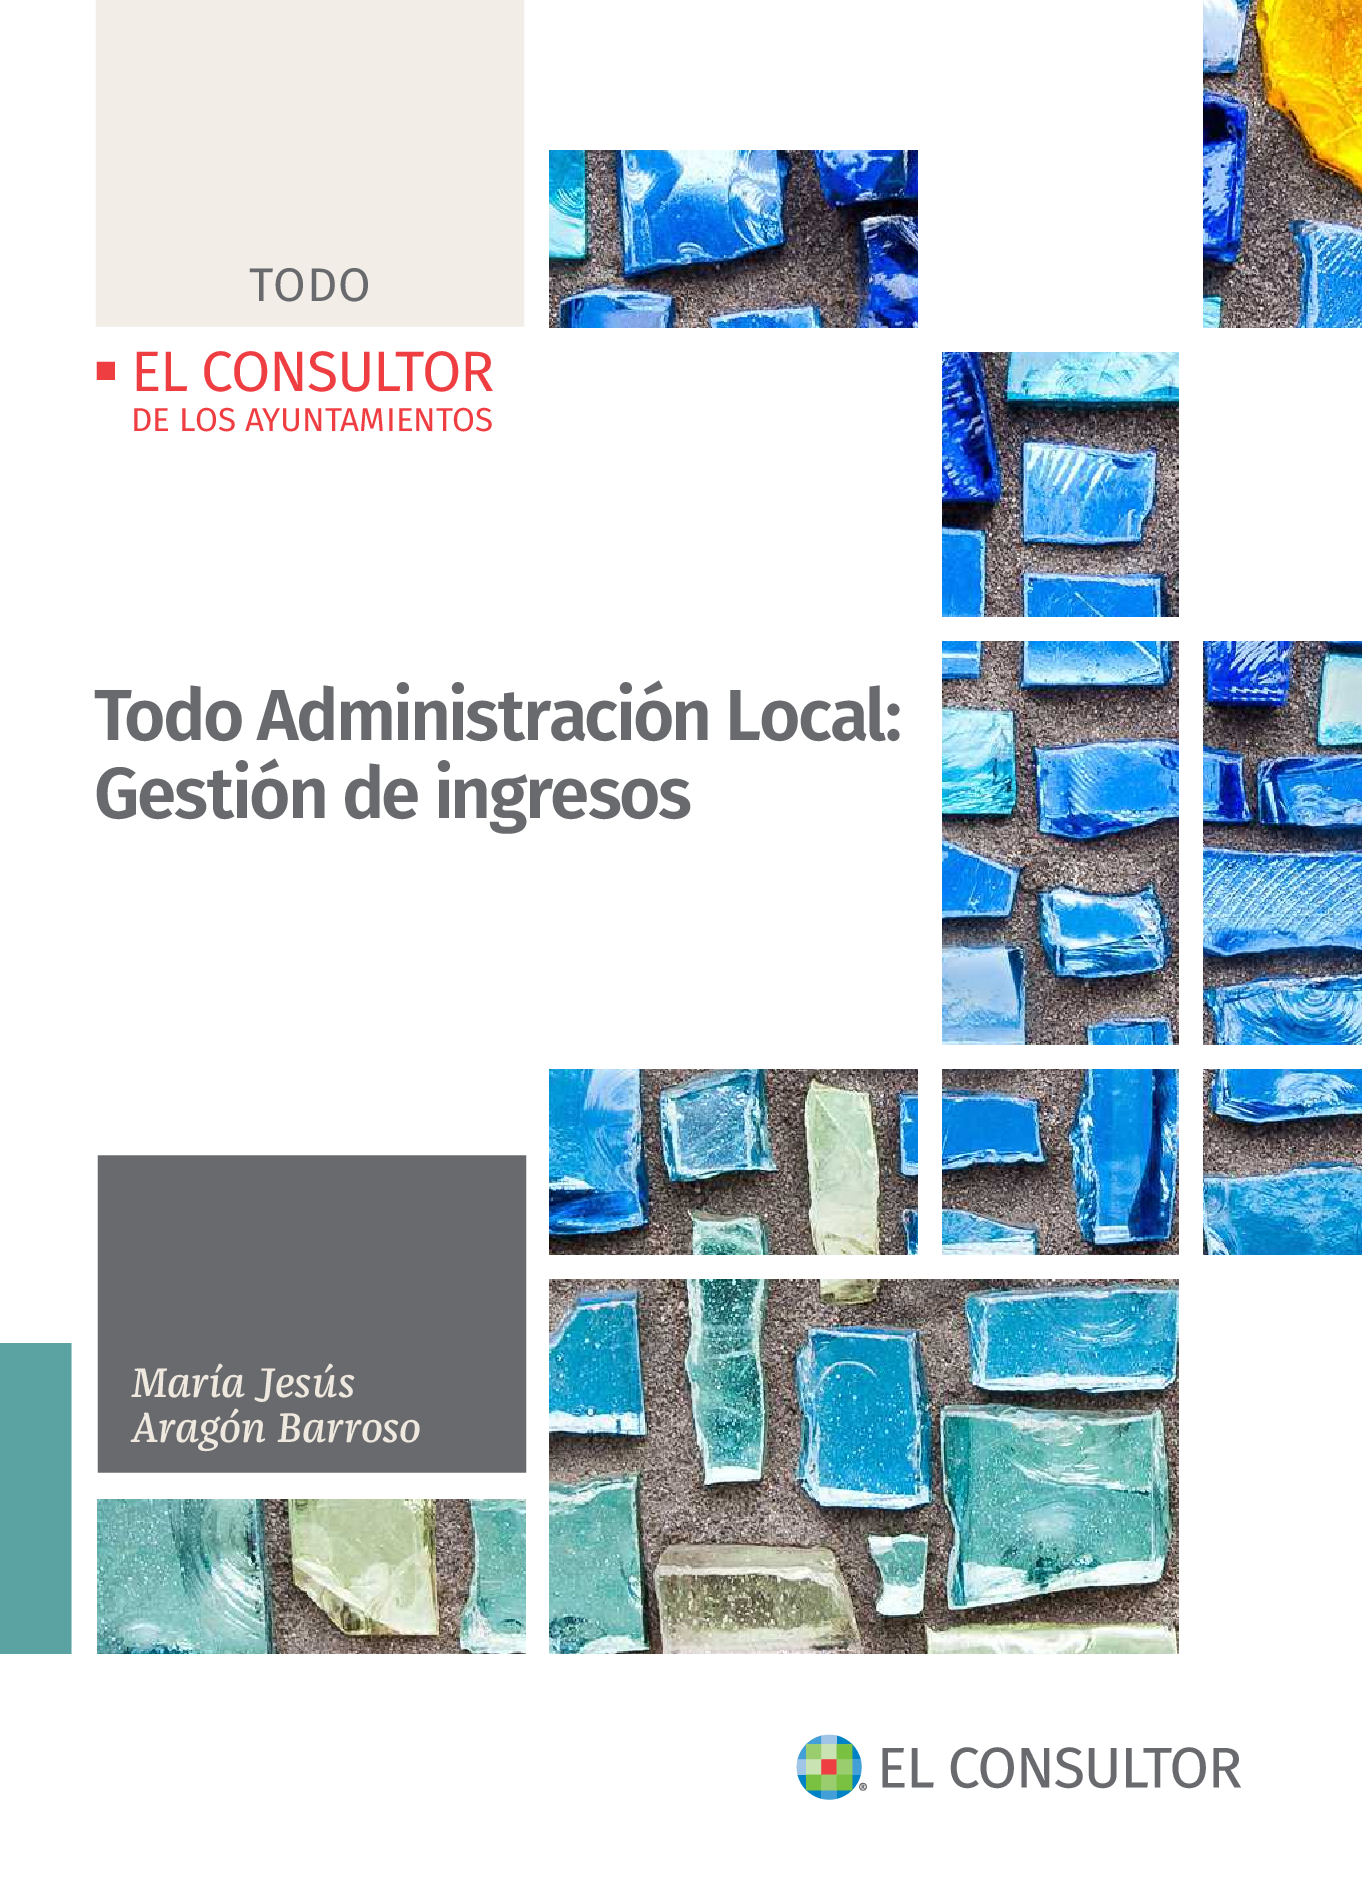 TODO ADMINISTRACION LOCAL GESTION INGRESOS Herramienta de consulta completa y detallada sobre la gestión de los ingresos en el ámbito local